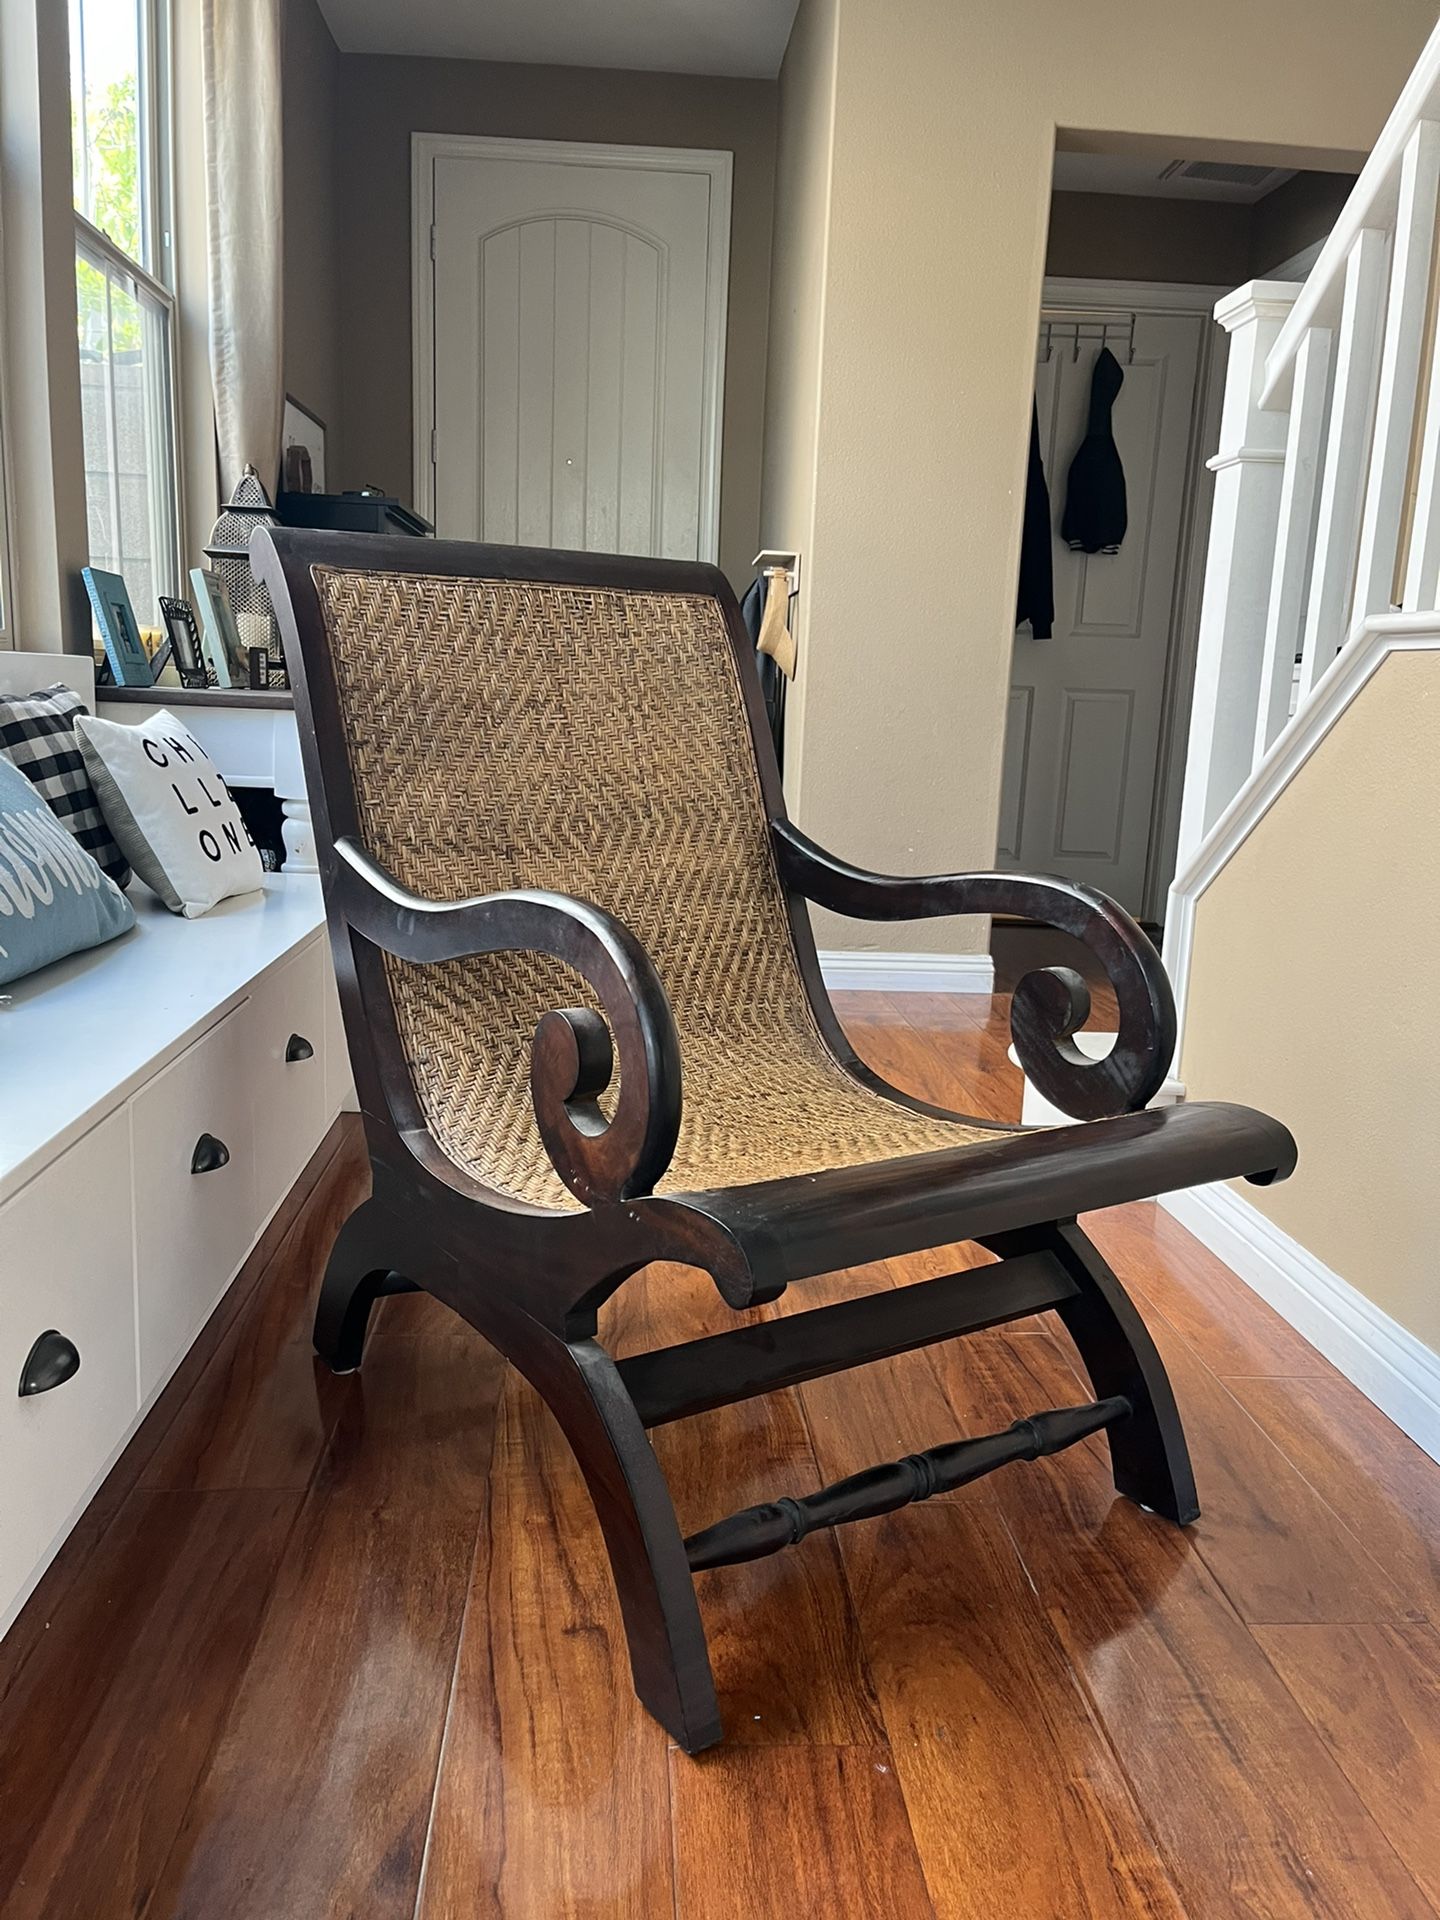 Cane / Wicker Indoor Chair